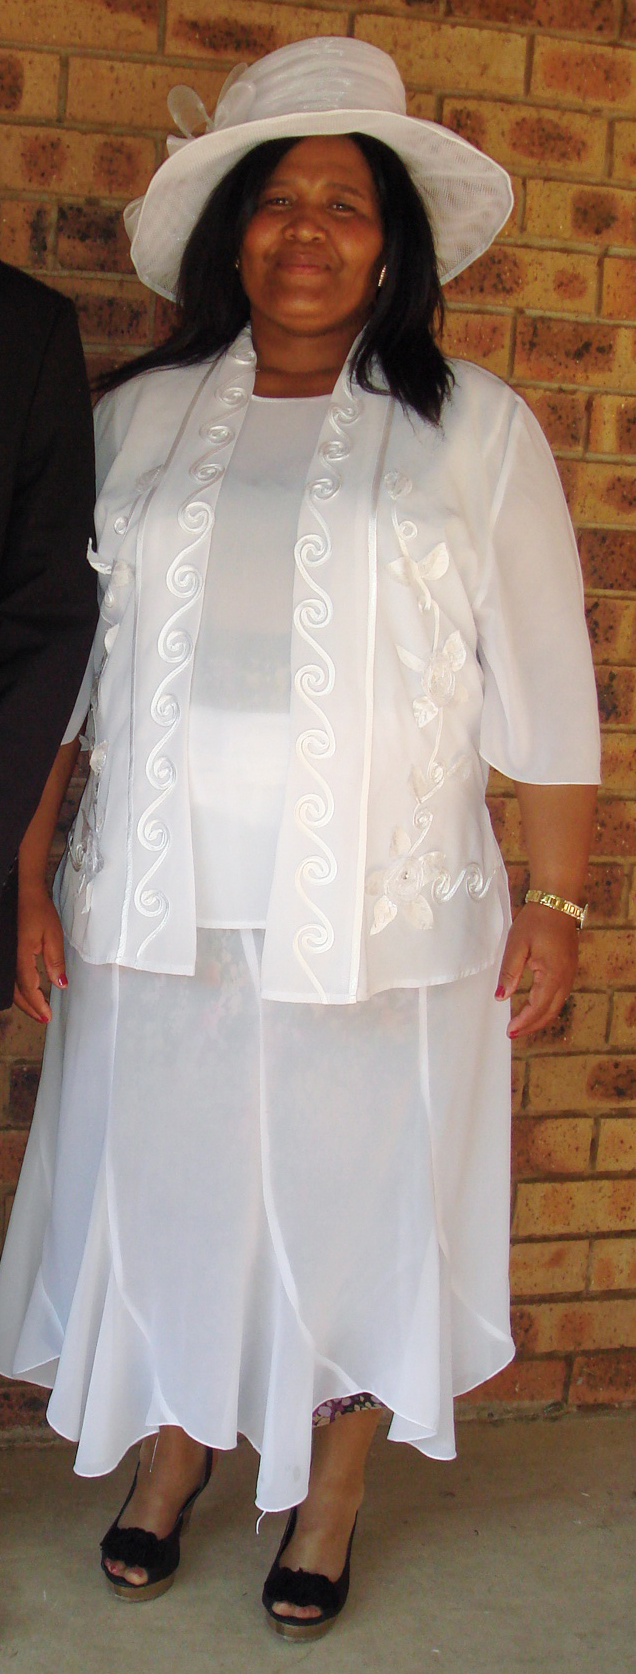 Sister Overseer Ntluko